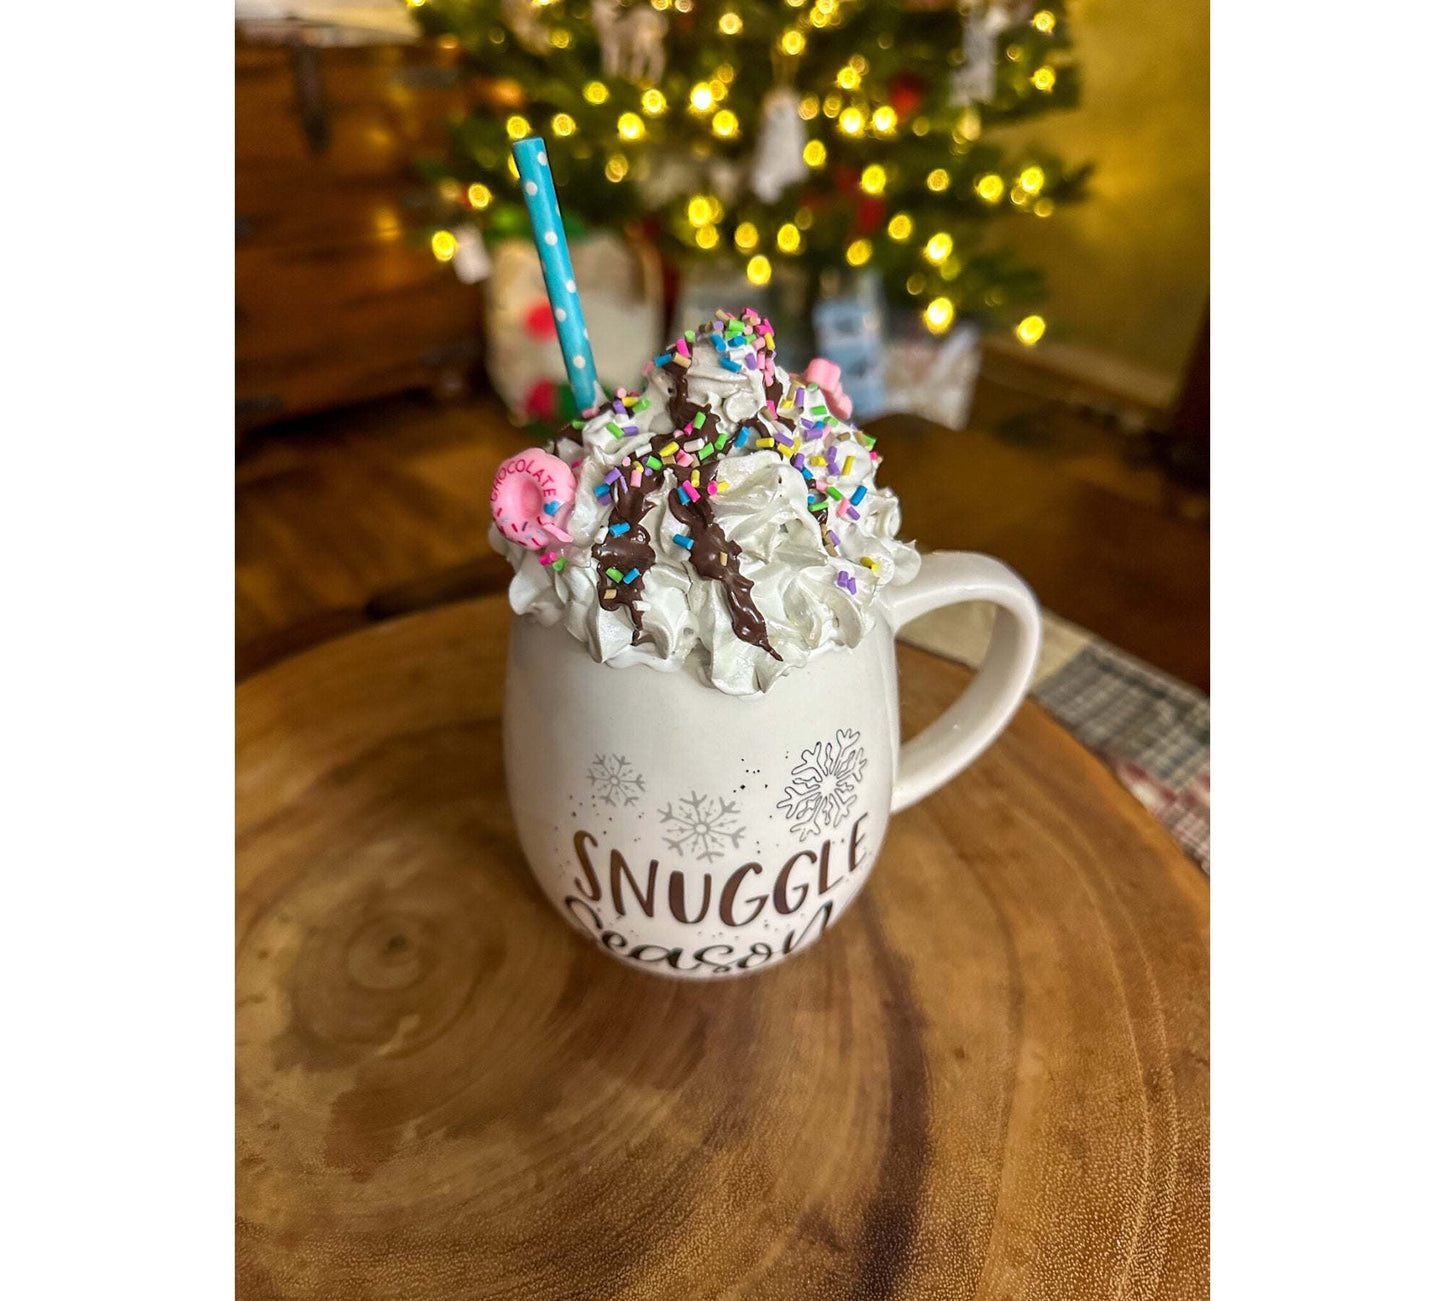 Festive Faux Mug Delights: Snuggle Season Deluxe WFaux Snowflake Mug